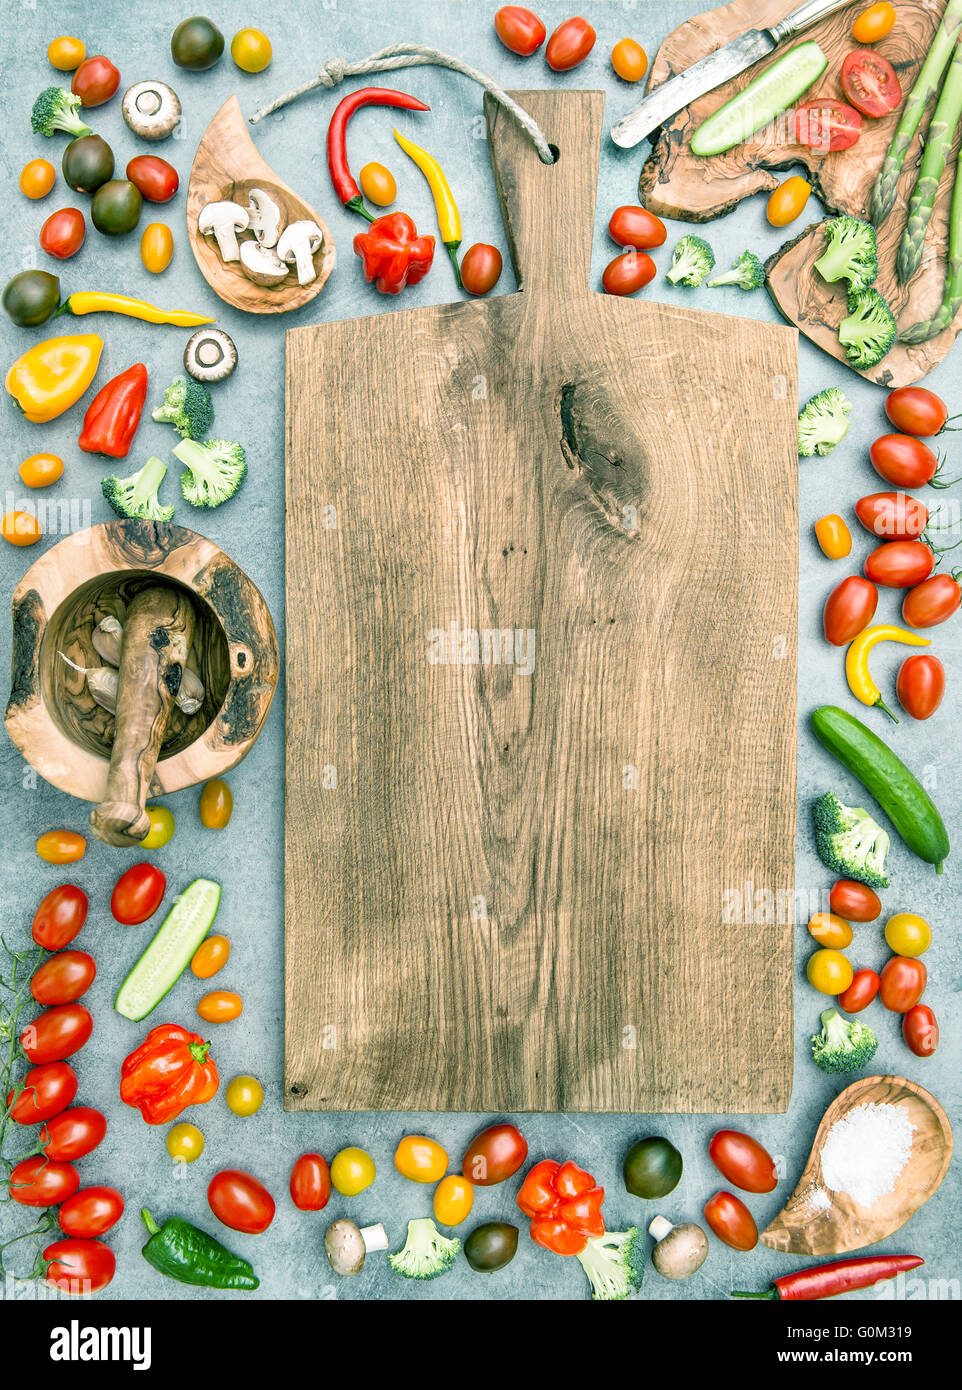 Holzbrett und frisches Gemüse. Gesunde Ernährung. Vintage-Stil getönten Bild Stockfoto